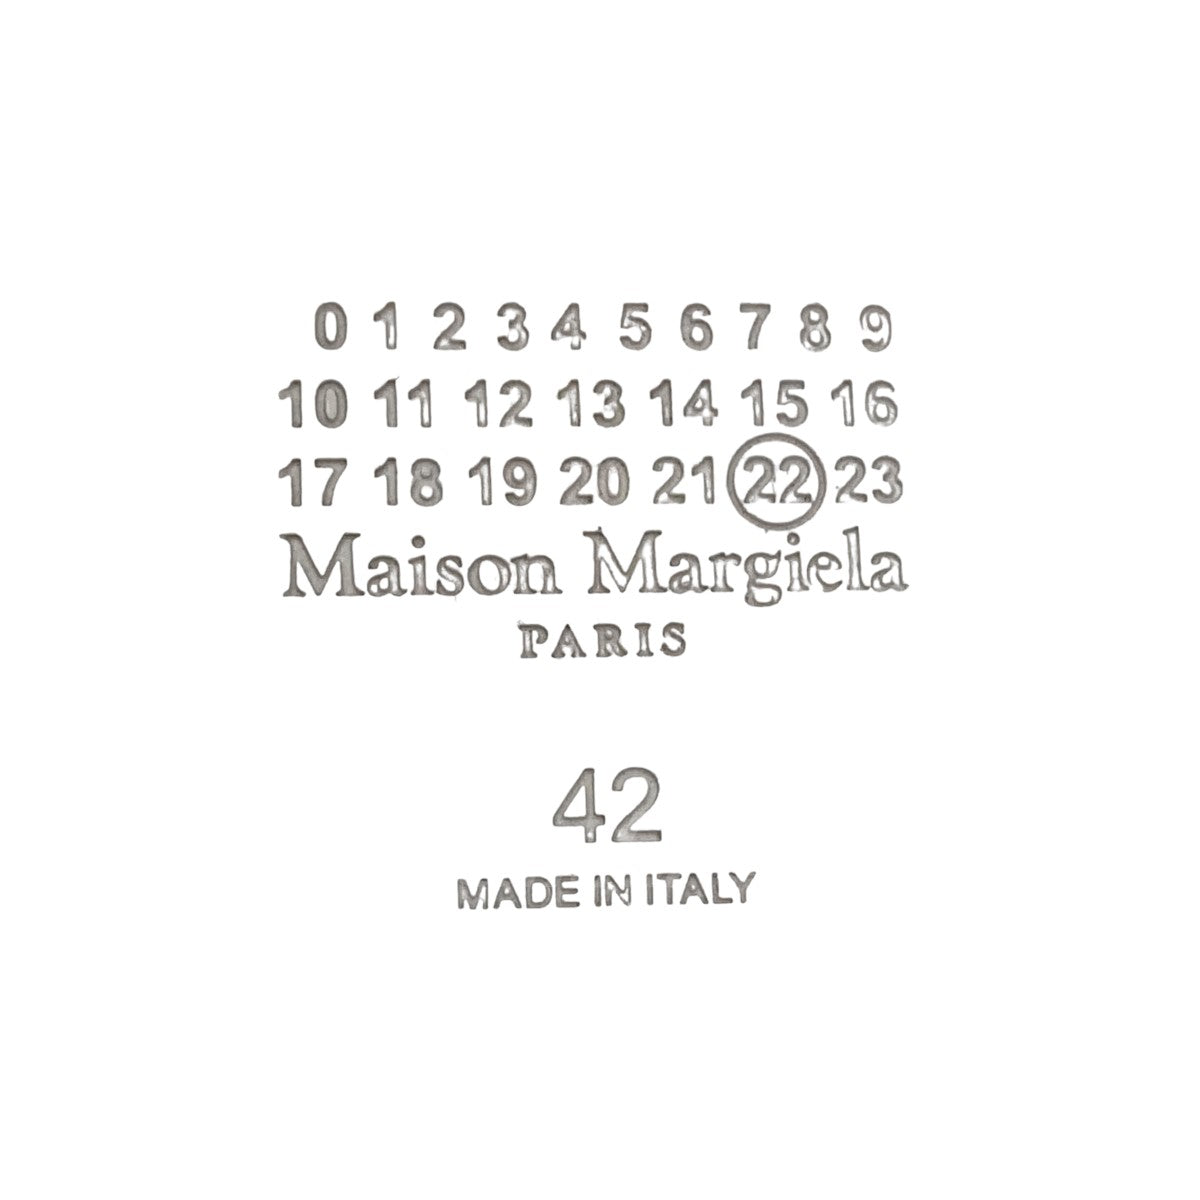 Maison Margiela(メゾン マルジェラ) Tabi トングサンダル S58WX0096 